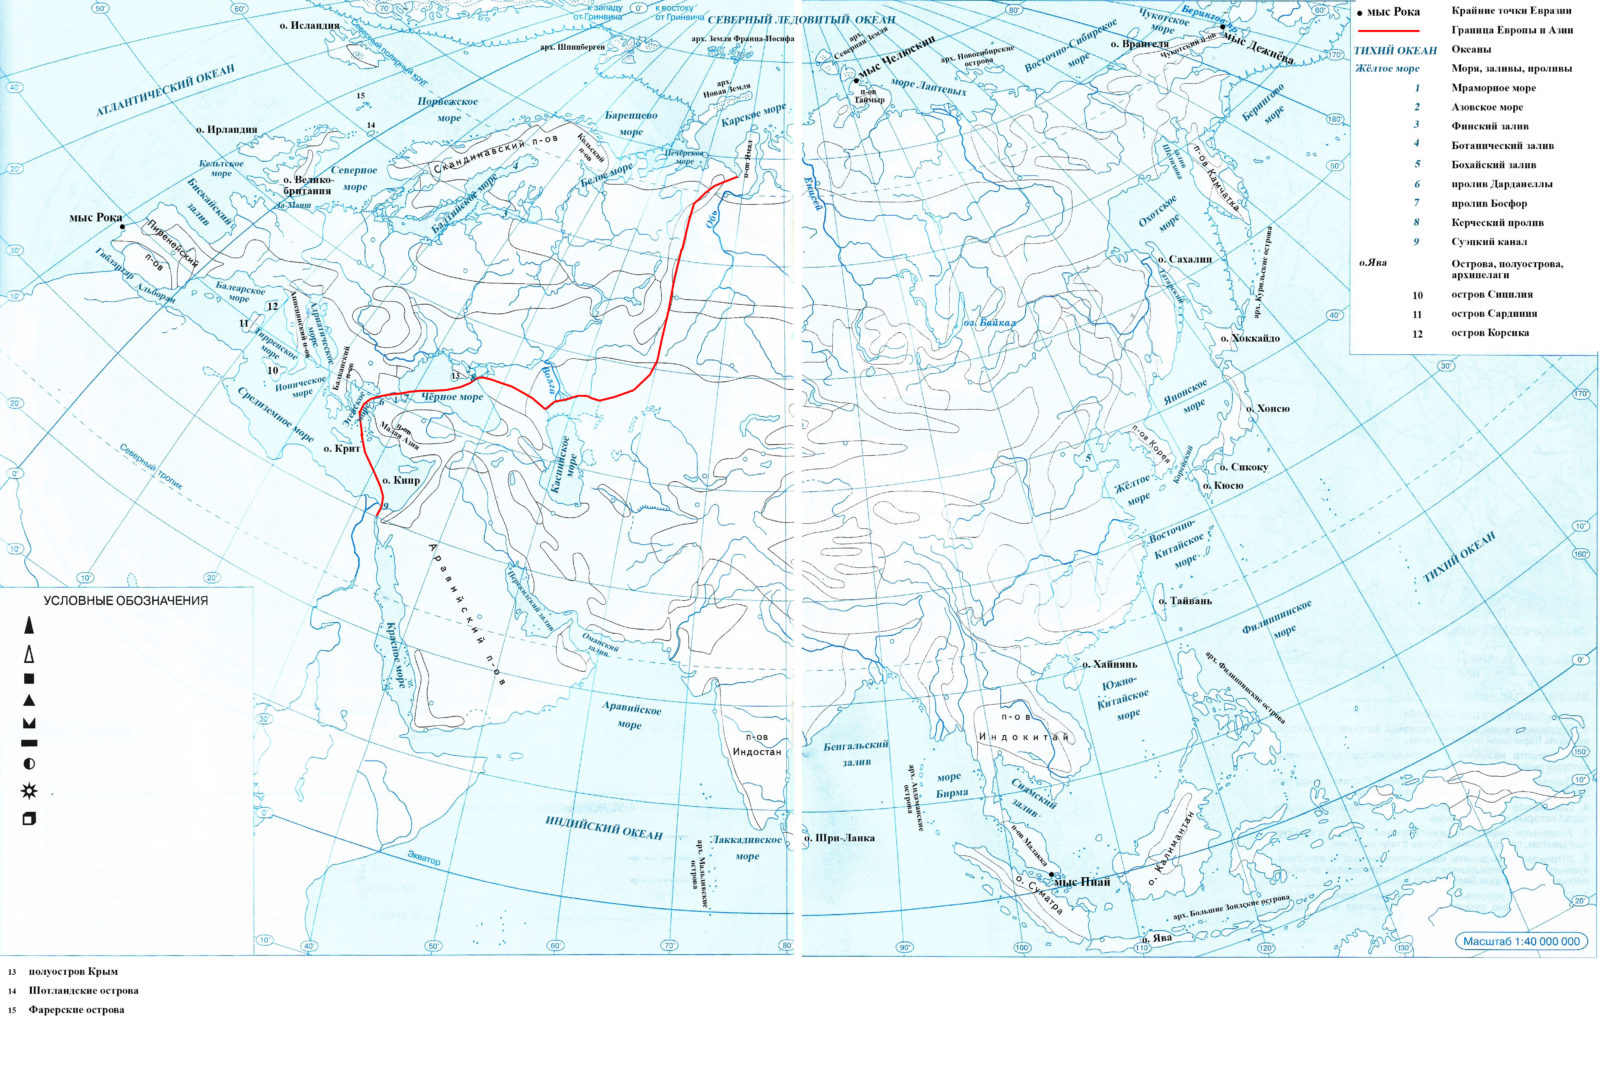 Контурная карта Евразии контурная карта Евразии